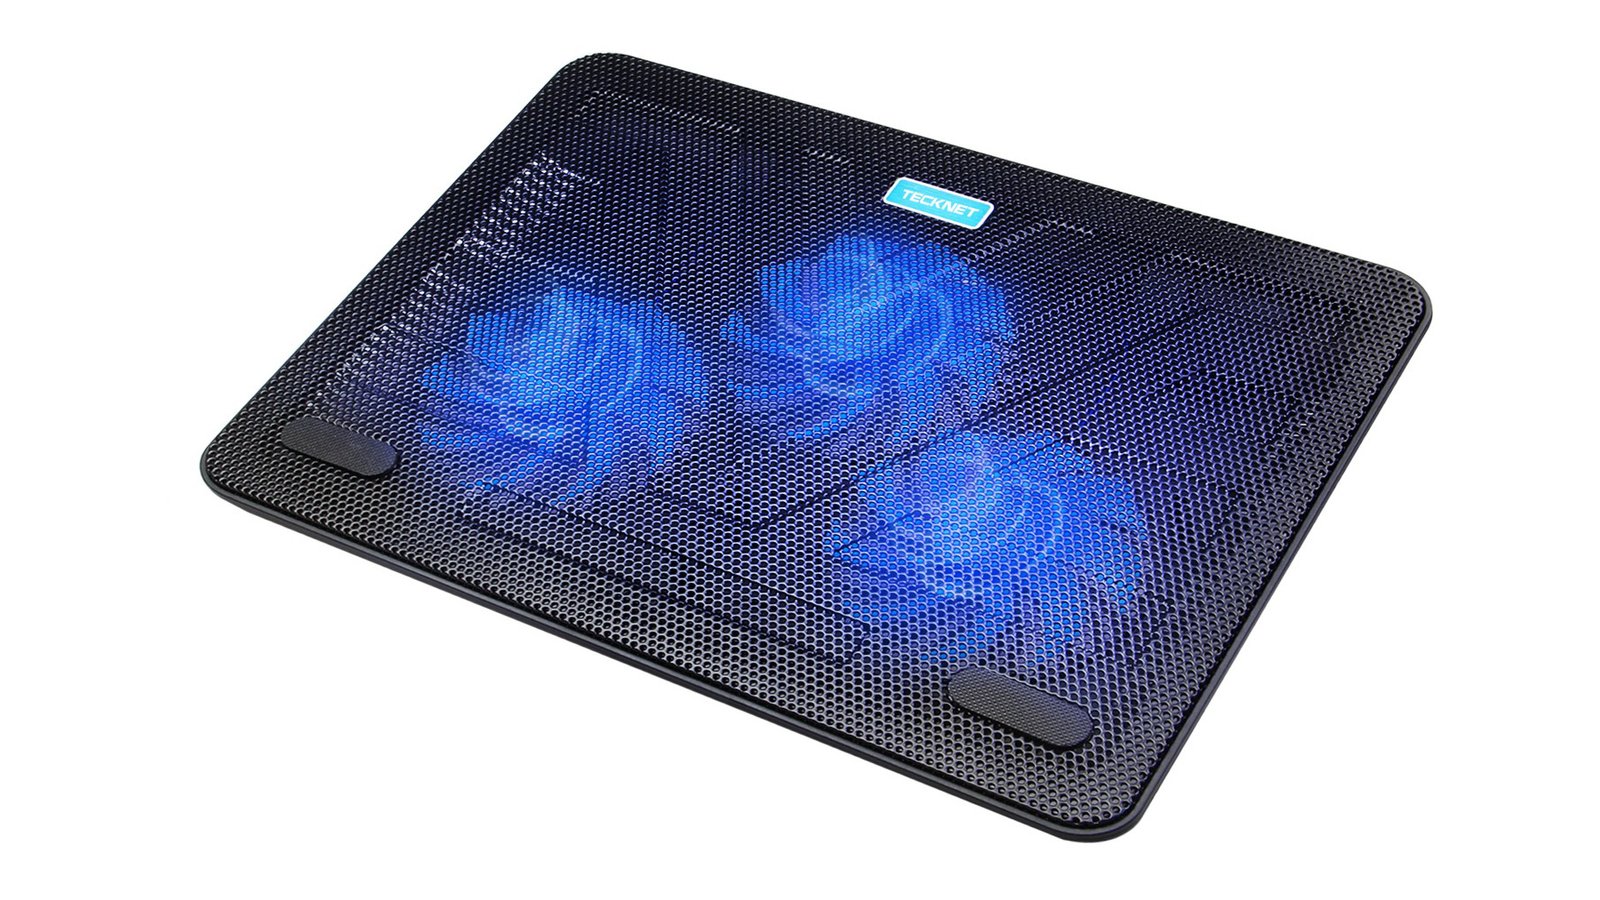 Best laptop cooling pad: TeckNet N8 Laptop Cooling Pad